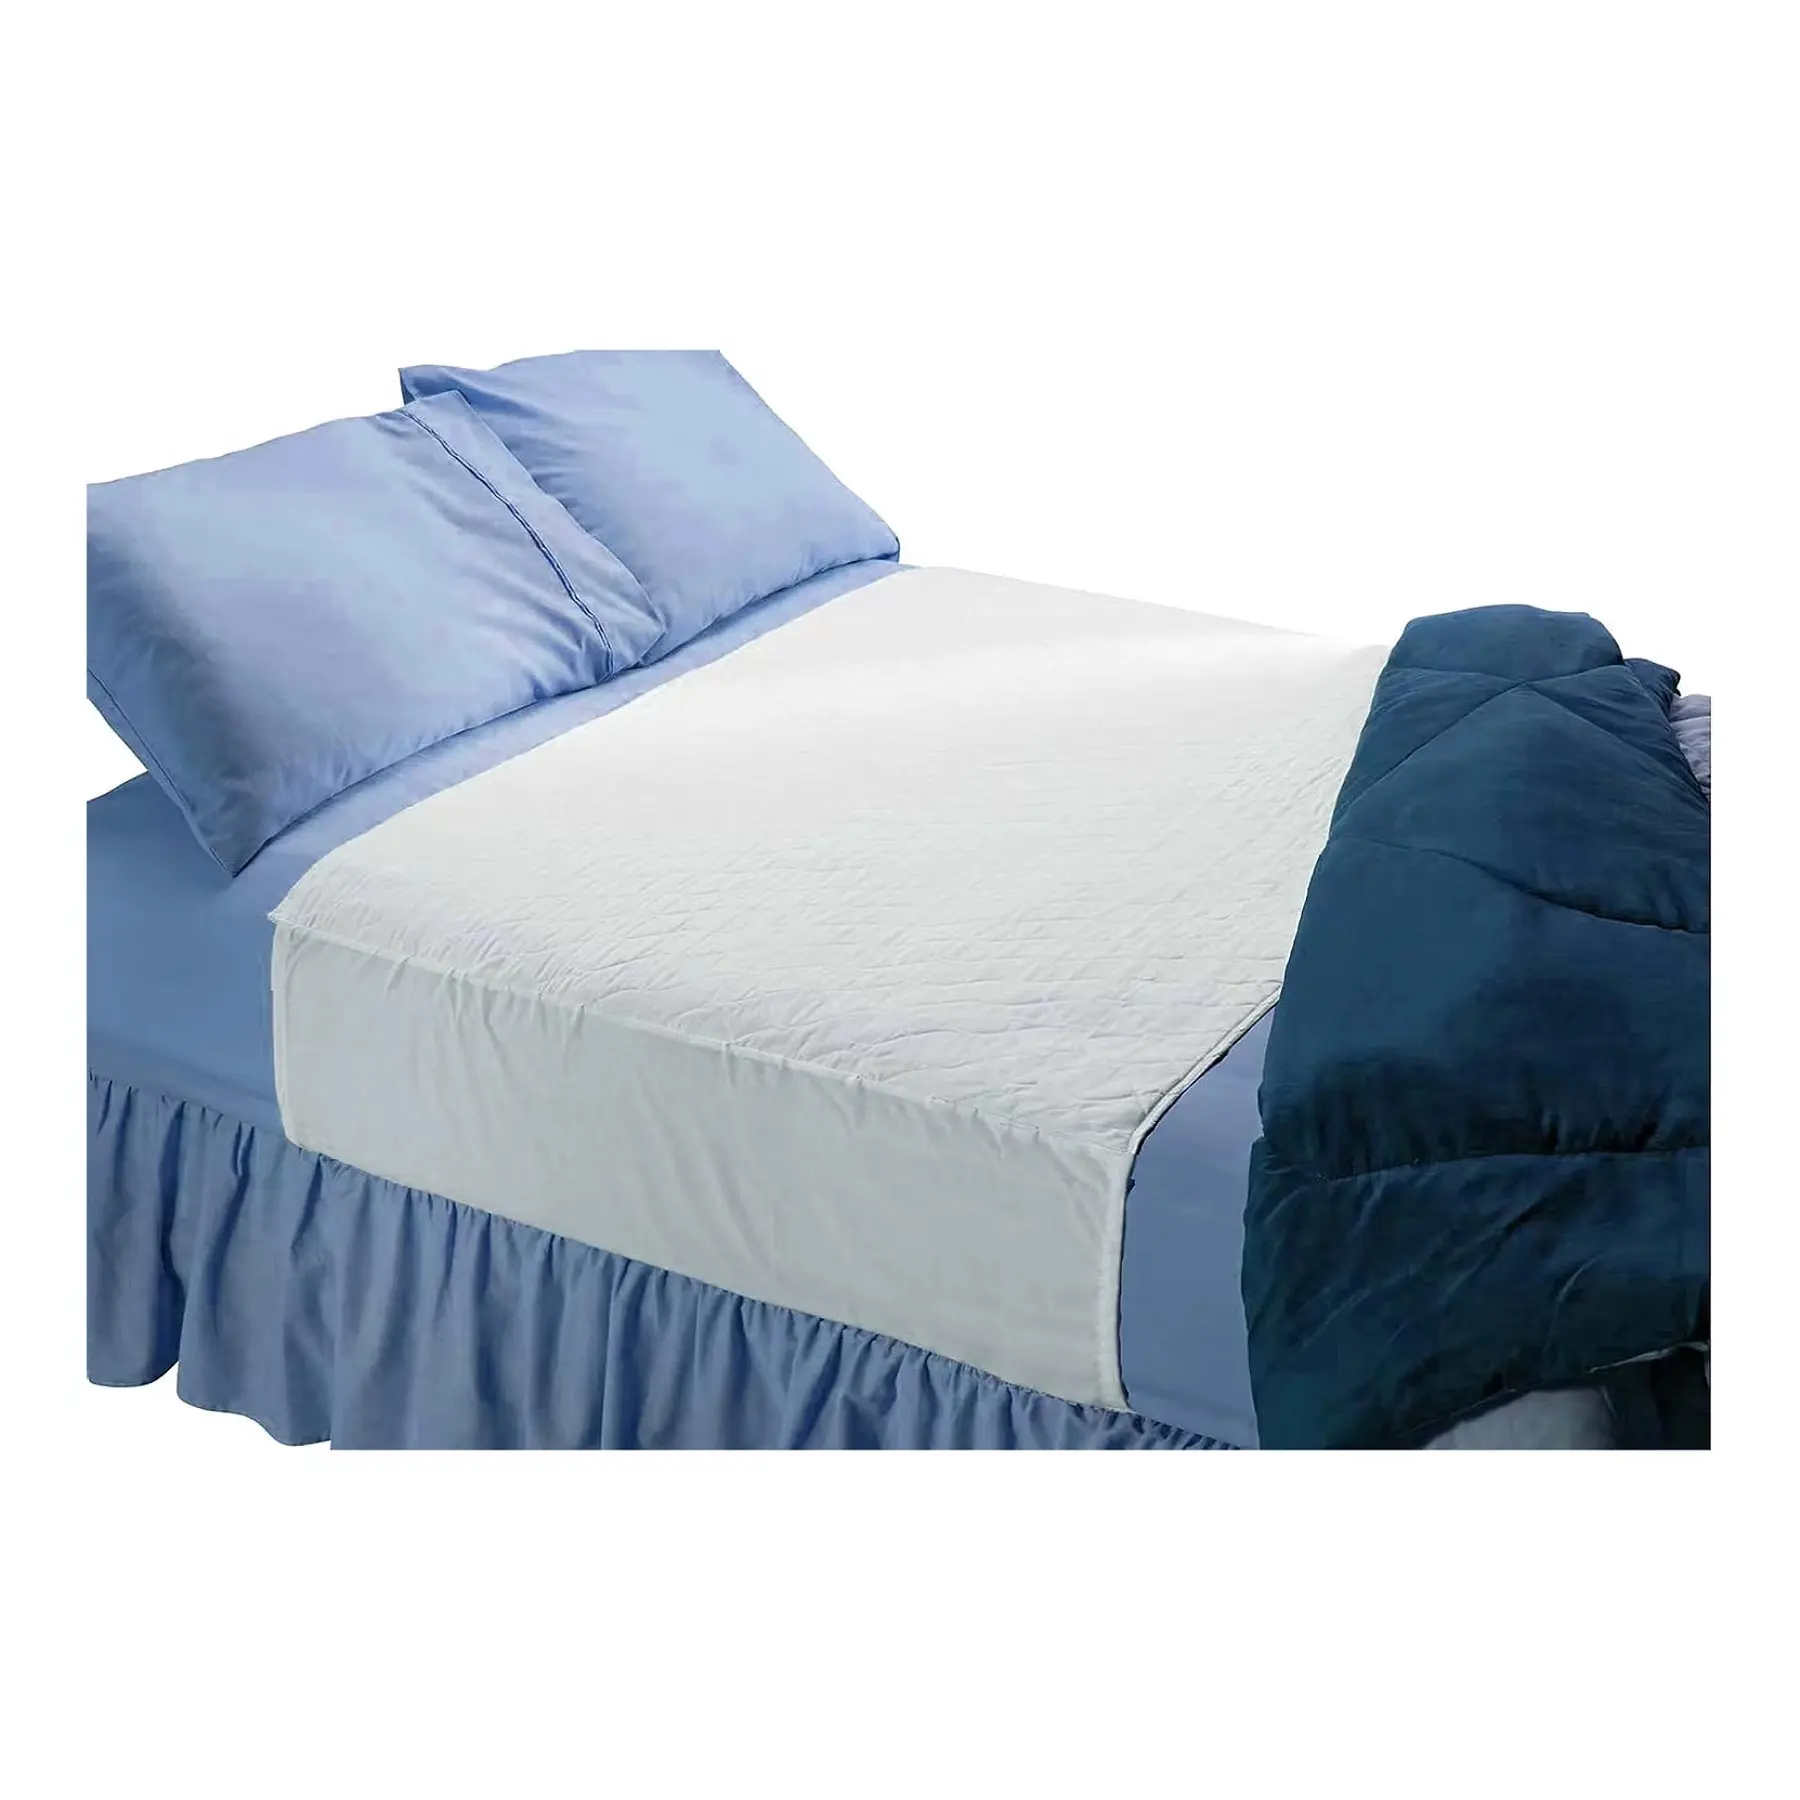 Almohadilla de cama impermeable absorbente con lados ajustables Lavable Tuck in Underpad Protección contra la incontinencia para mascotas adultas